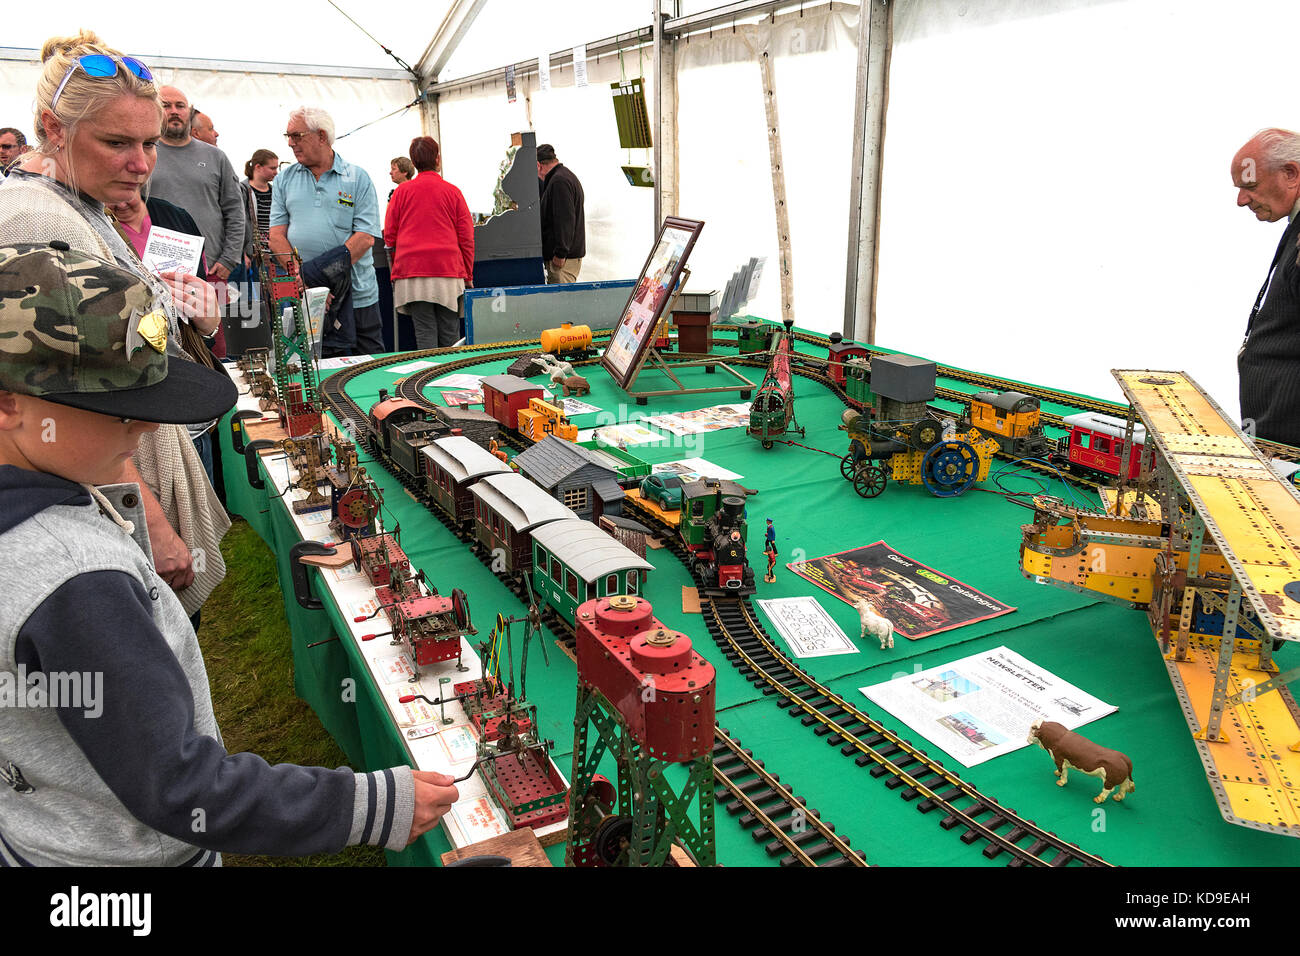 Familien und Sportbegeisterte an einer Modellbahn und meccano Modelle Ausstellung in Cornwall, England. Stockfoto